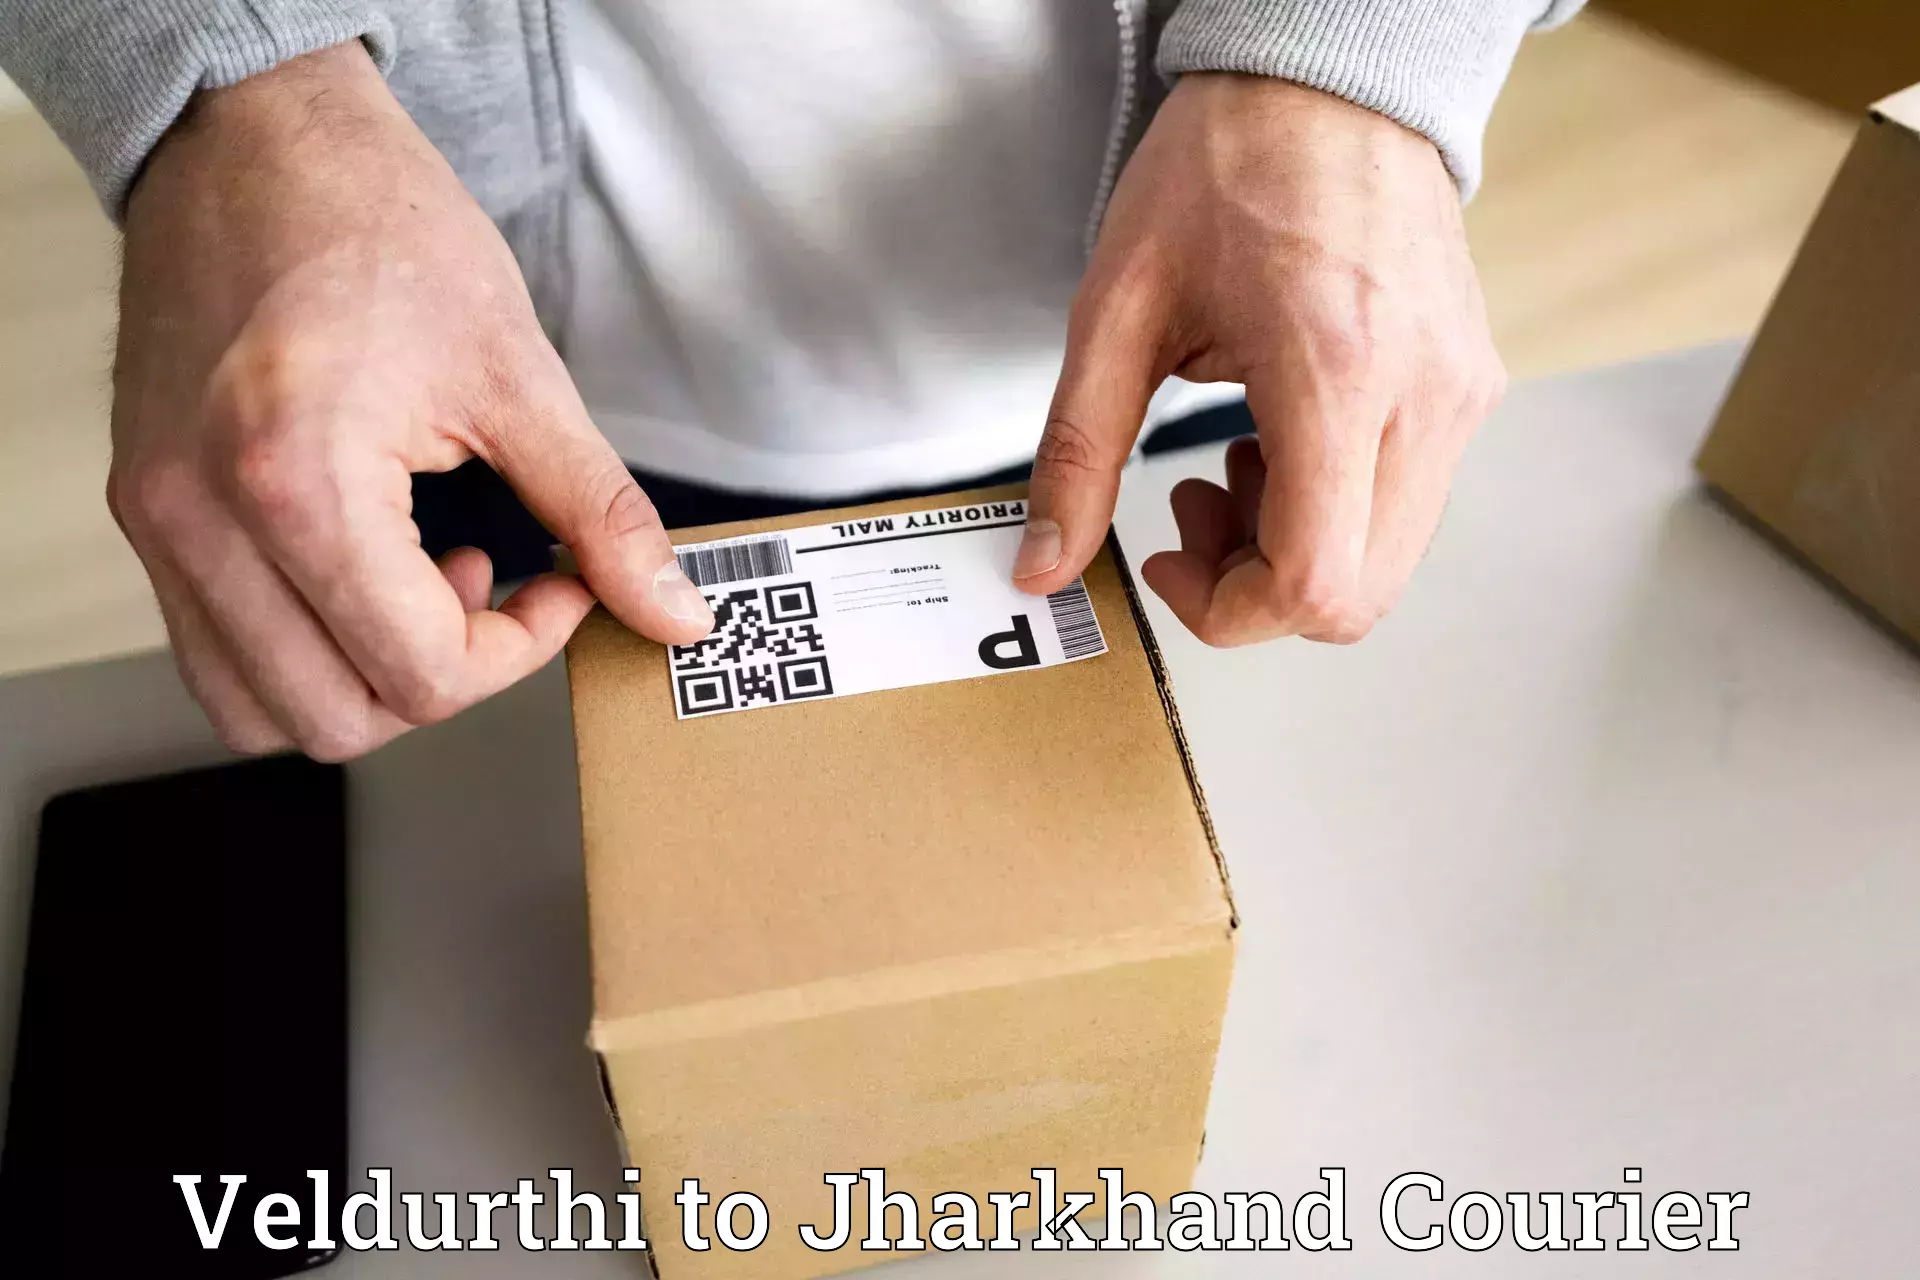 Cash on delivery service Veldurthi to Ranchi